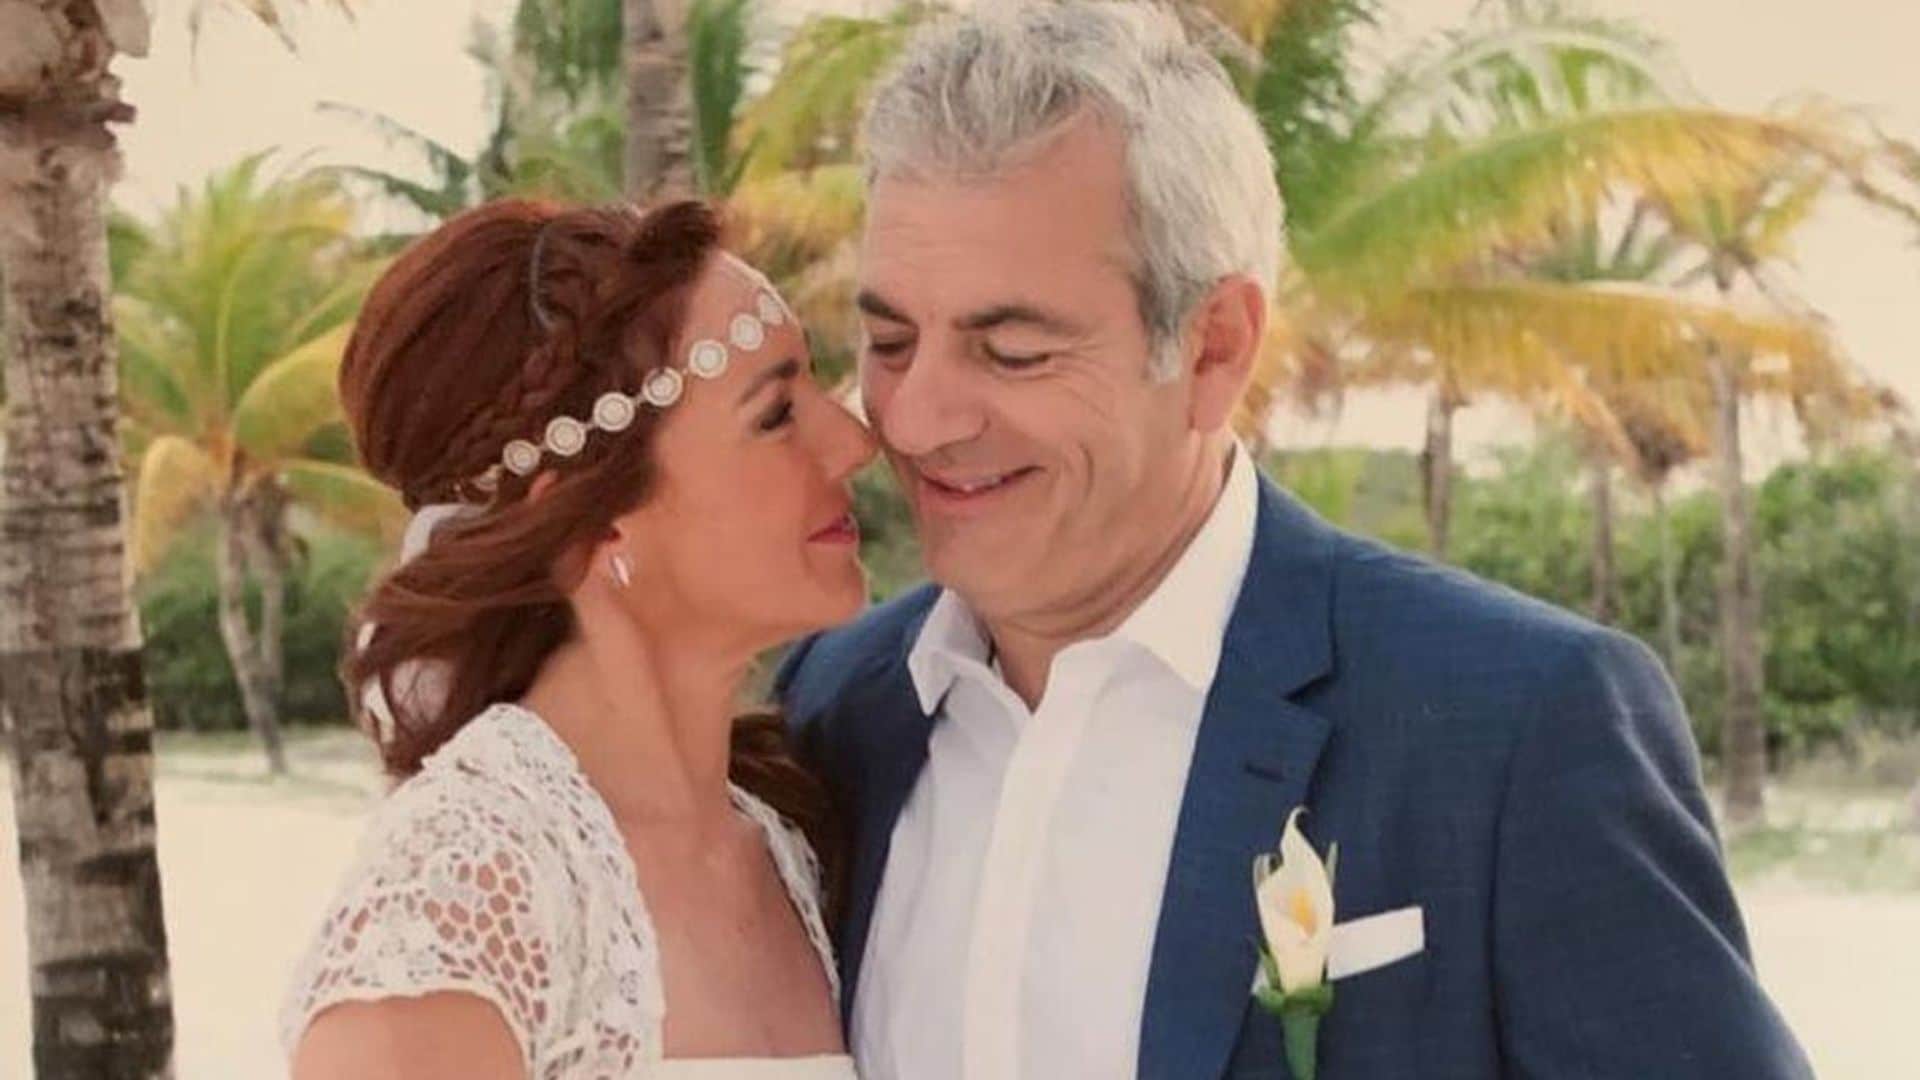 Carlos Sobera recuerda su boda en el paraíso con Patricia